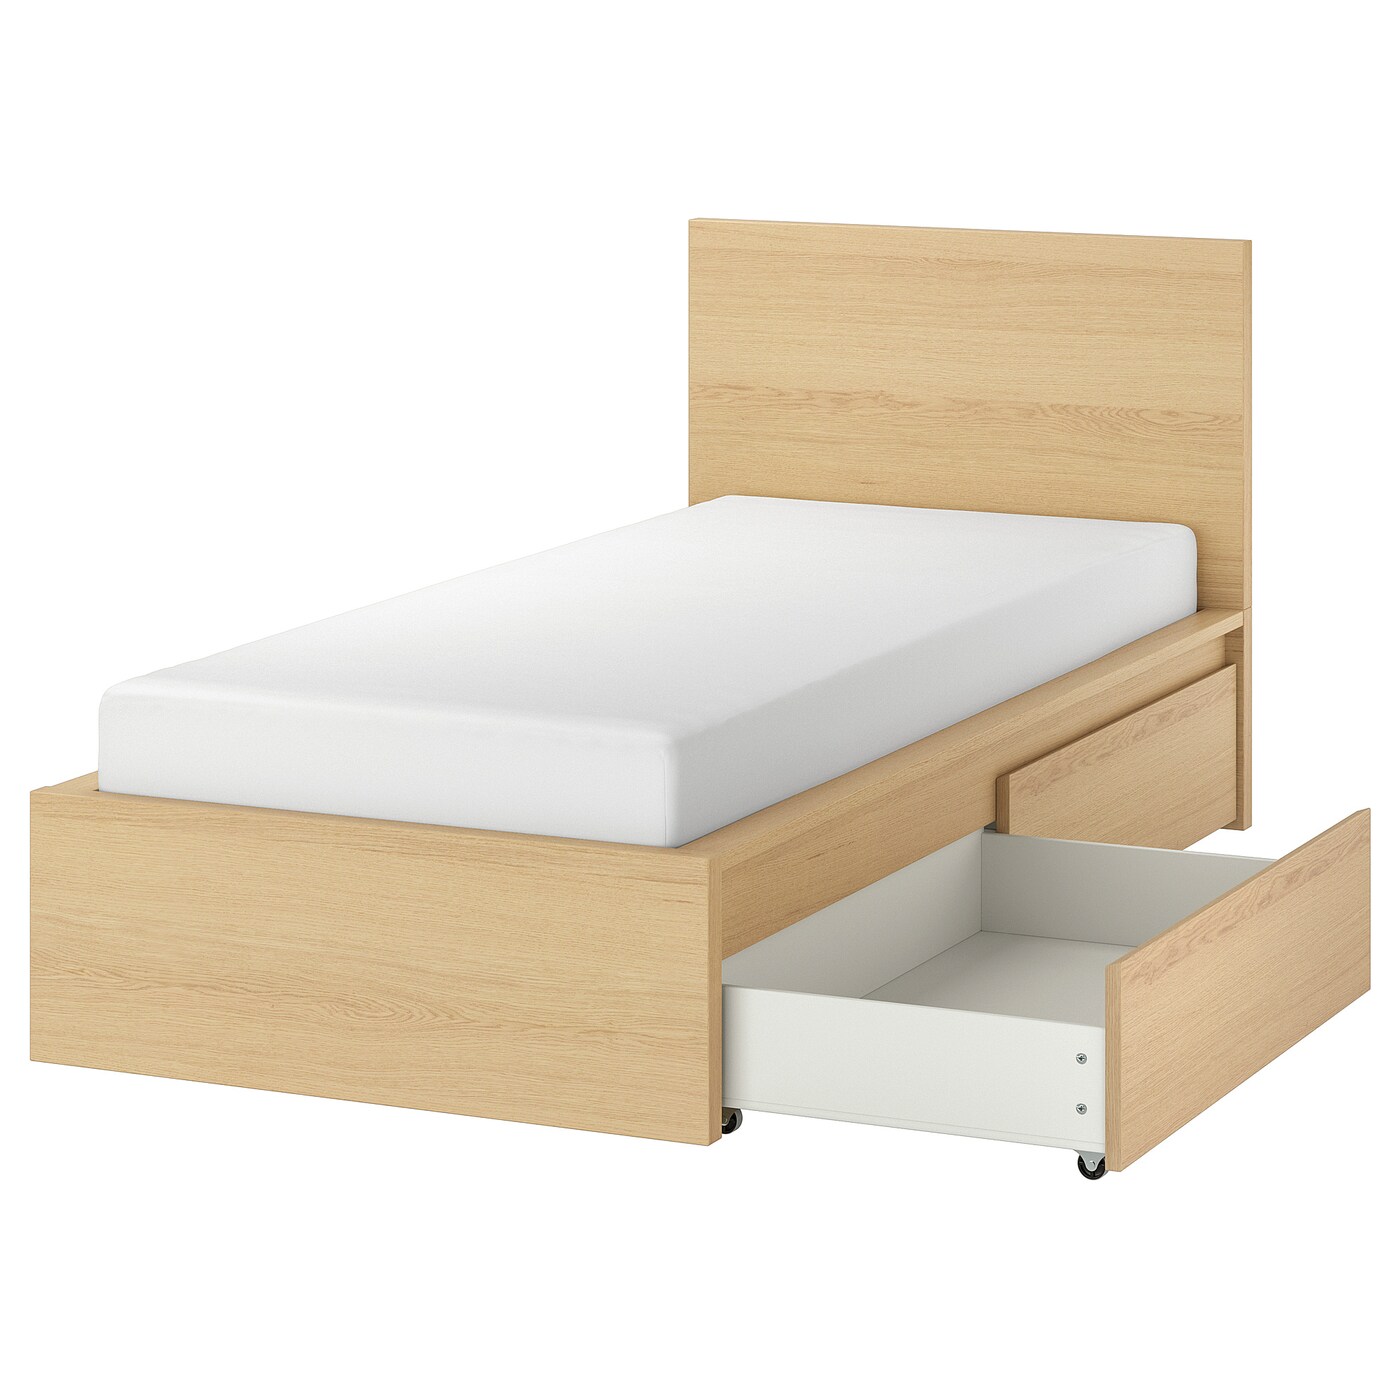 Каркас кровати с 2 ящиками для хранения - IKEA MALM, 200х90 см, под беленый дуб, МАЛЬМ ИКЕА